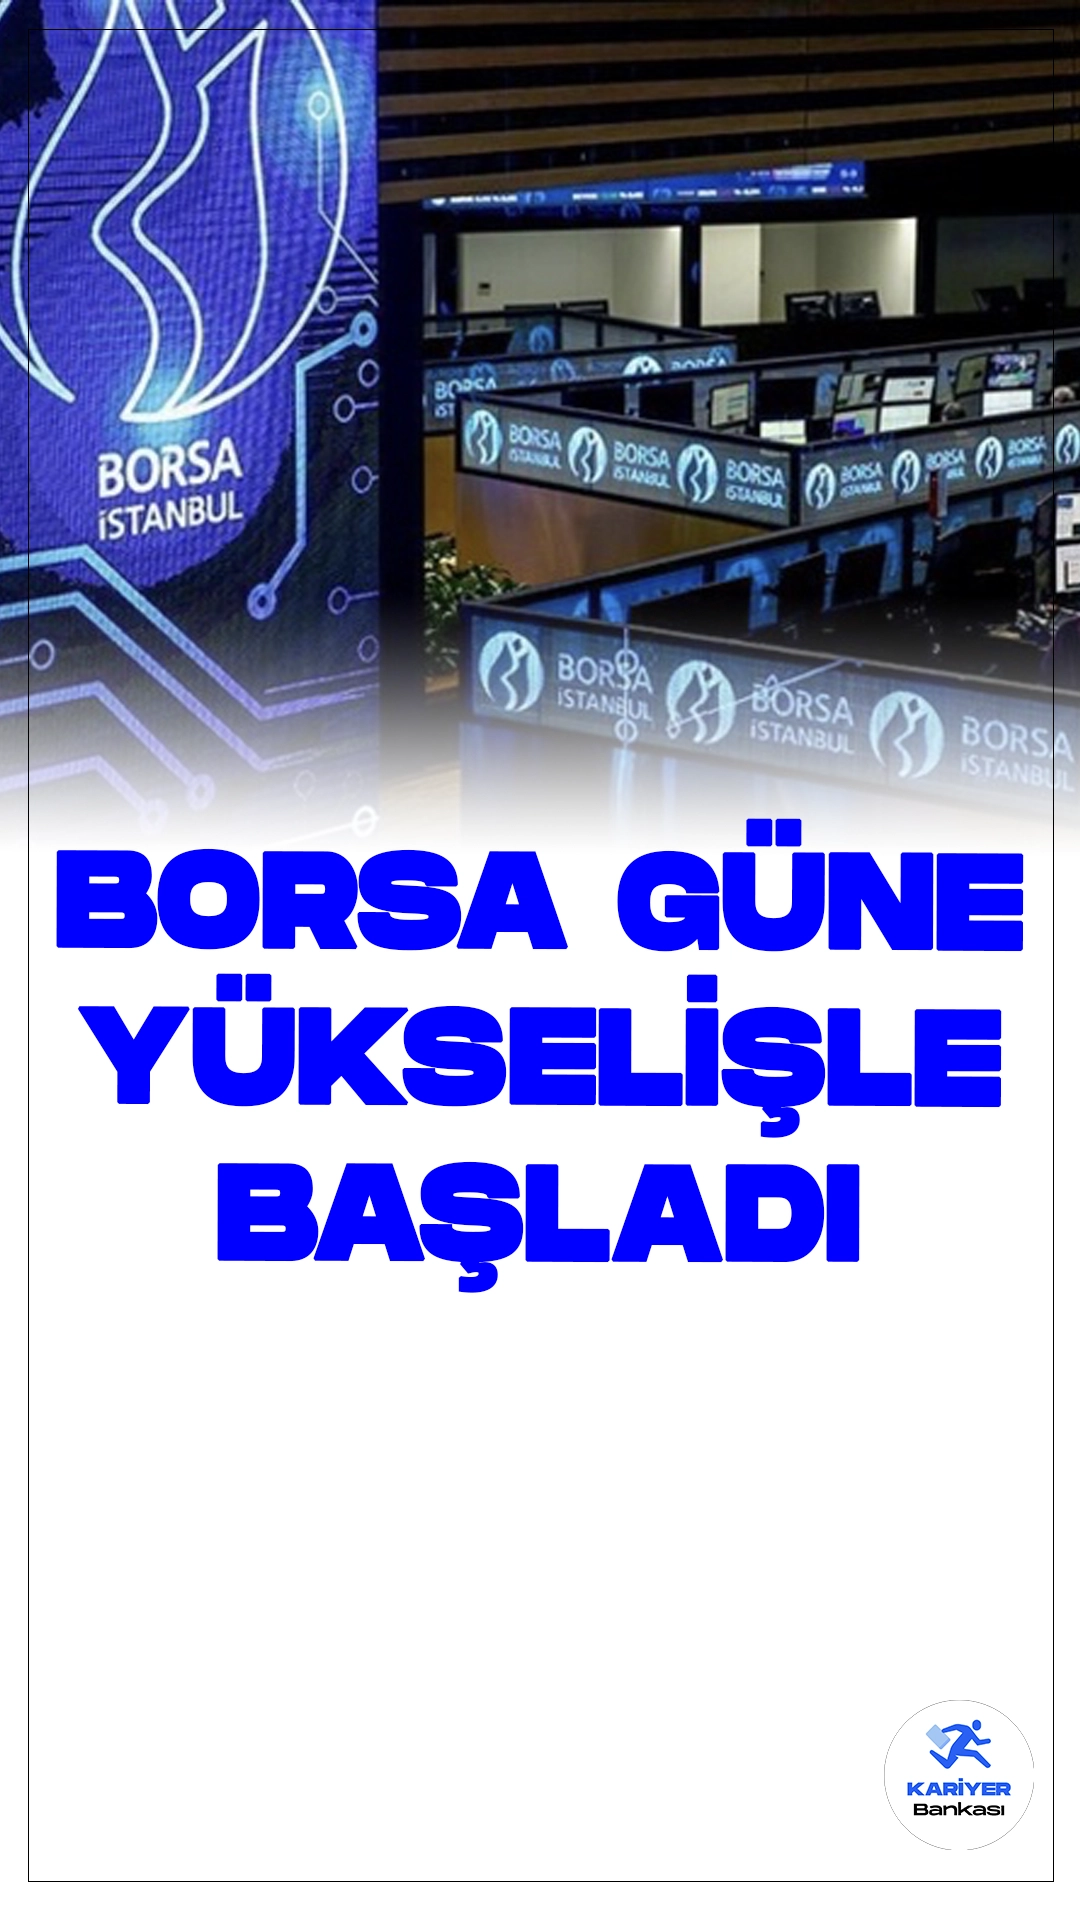 Borsa Güne Yükselişle Başladı.Borsa İstanbul'da BIST 100 endeksi, güne yüzde 0,37 artışla 10.911,92 puandan başladı. Bankacılık ve holding endeksleri de artış gösterdi.